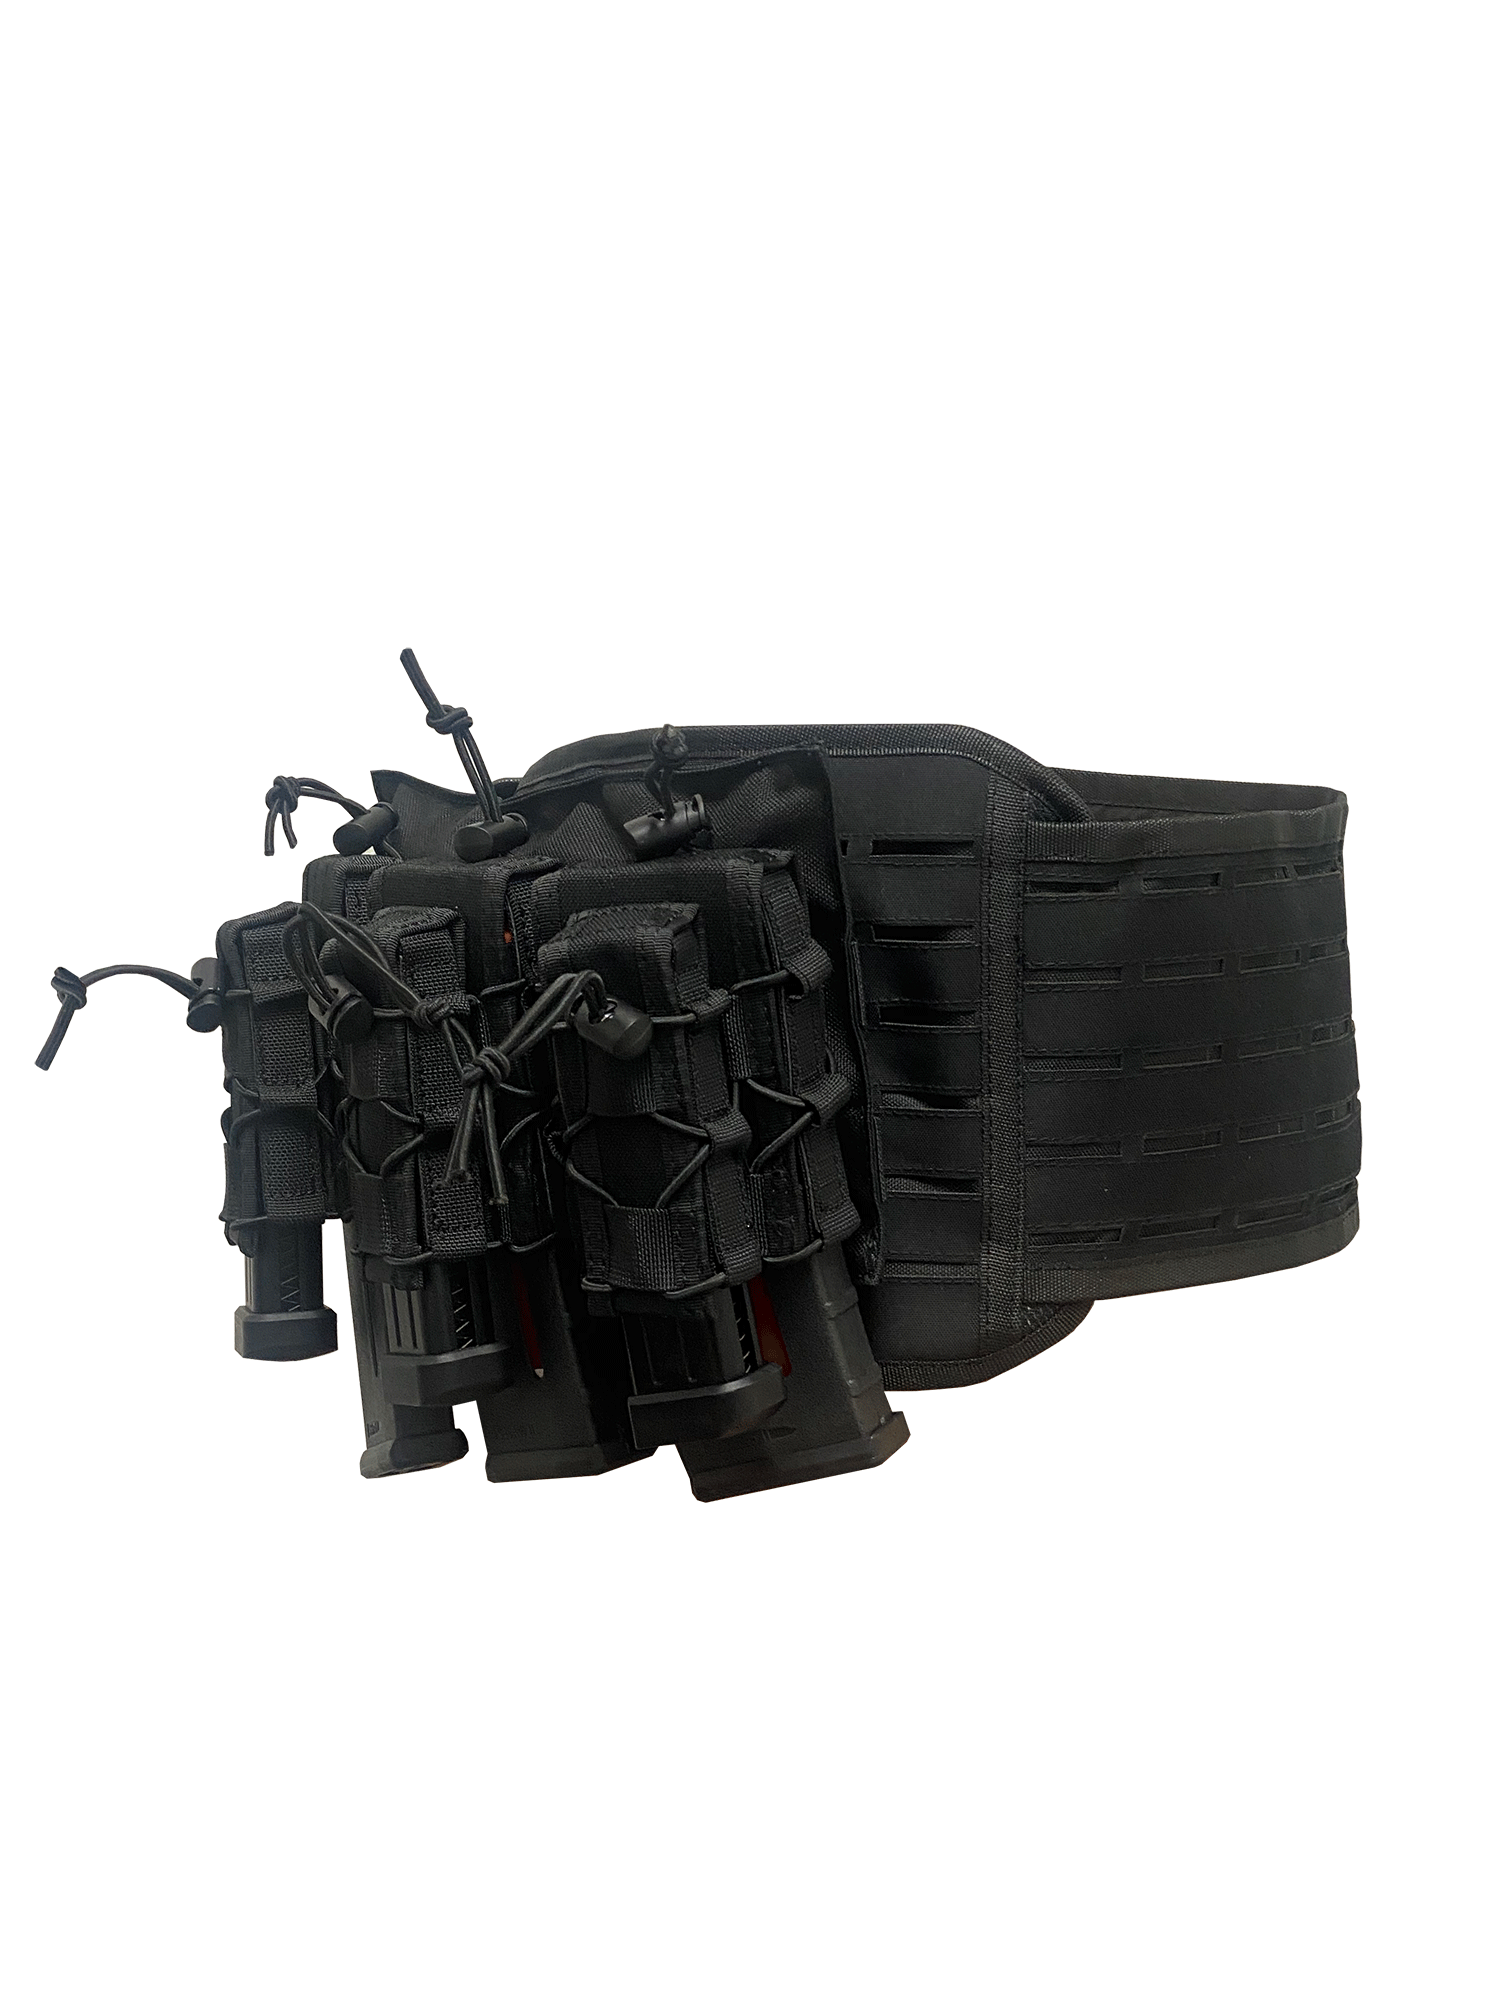 Gunfighter Airsoft Tac Pack - Multi Cam